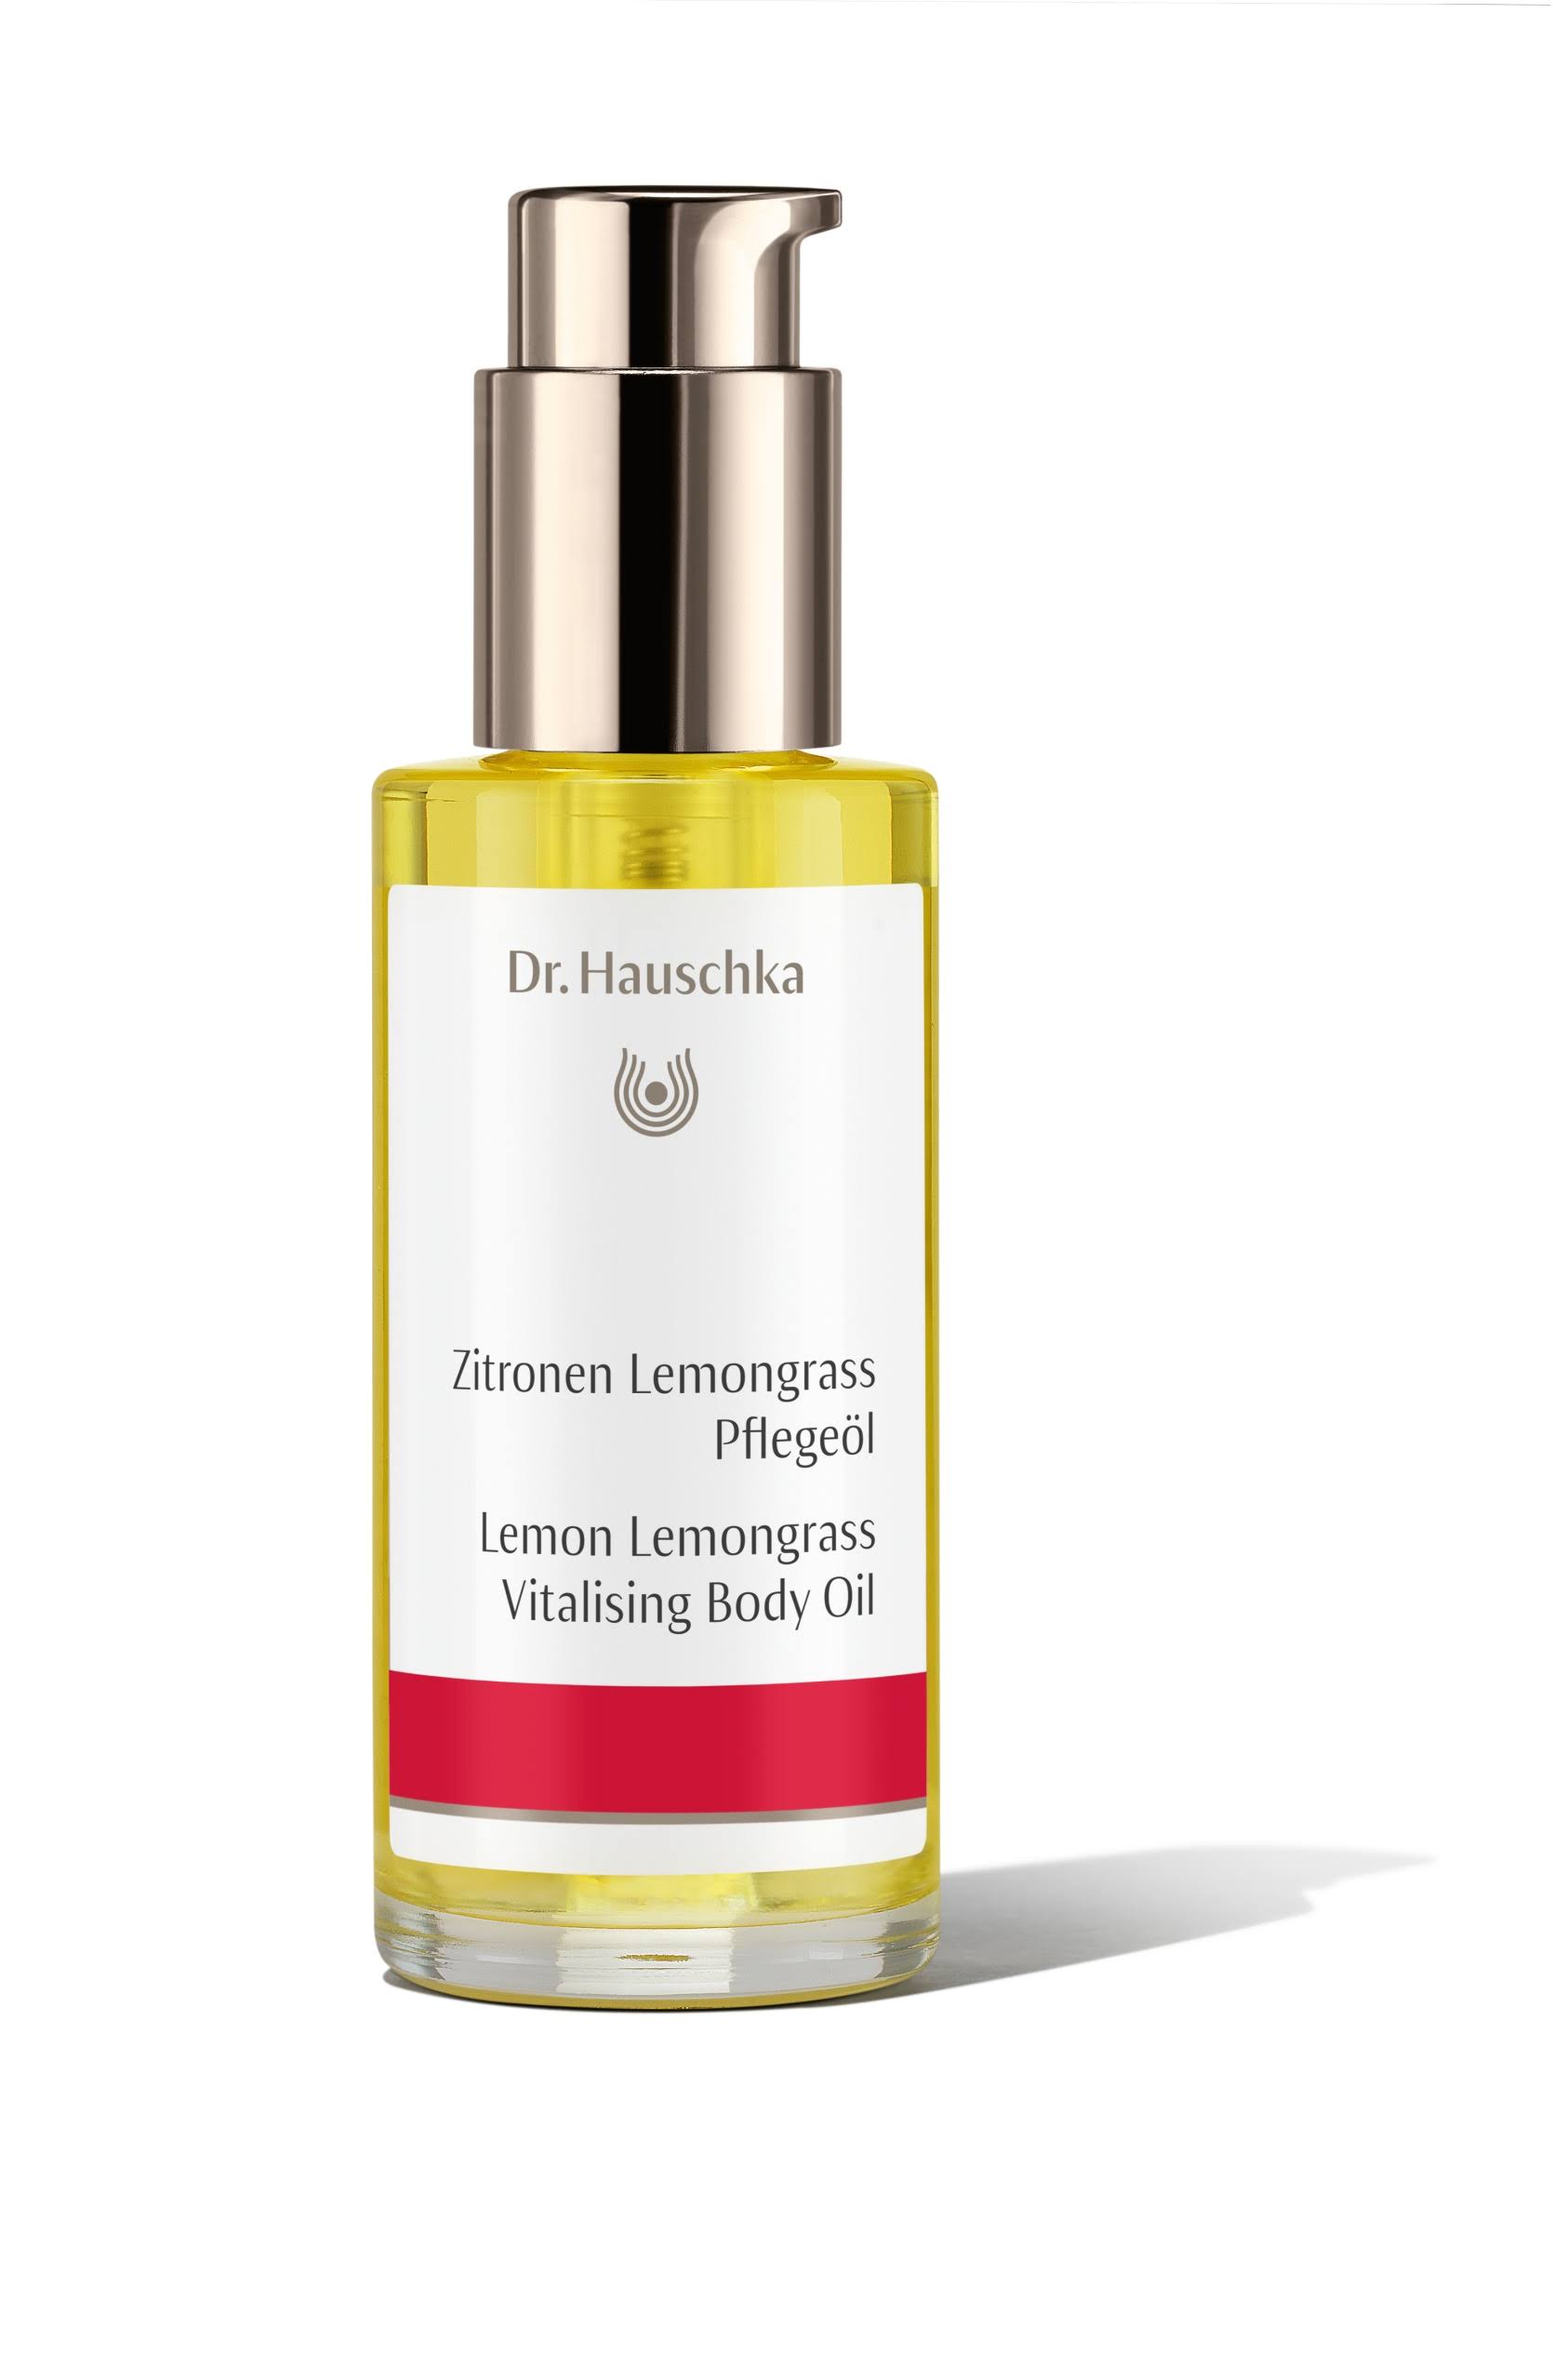 Dr. Hauschka Vitalising Body Oil - Lemon Lemongrass, 75ml